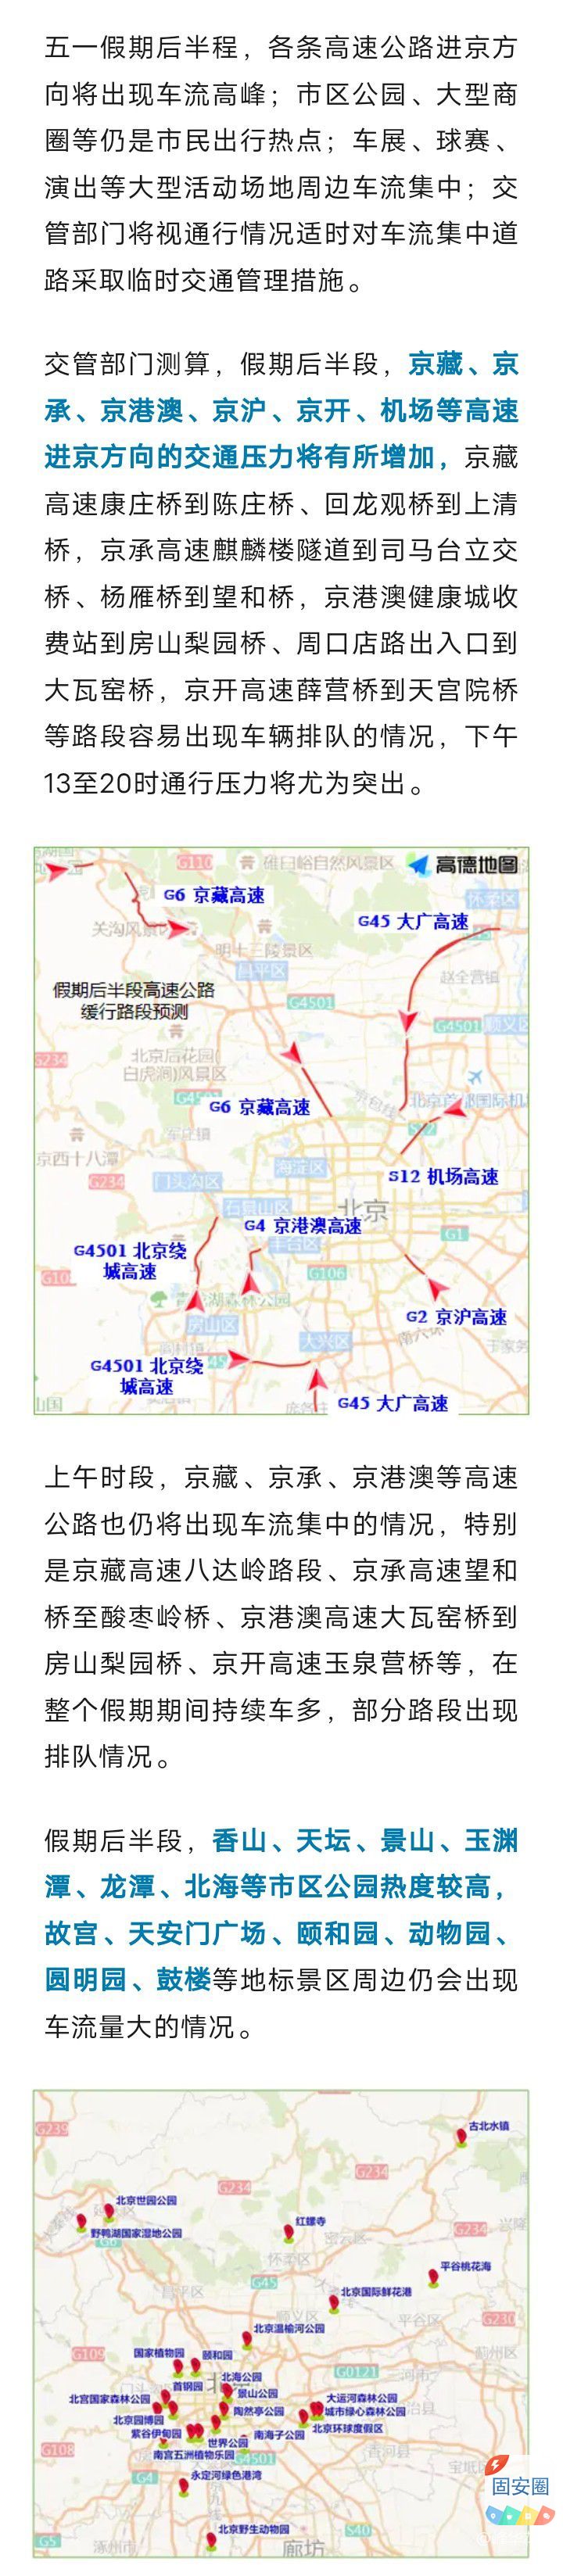 五一，后半程高速进京方向流量增大，城区公园商圈保持高热度6681 作者:峰华花园 帖子ID:306686 